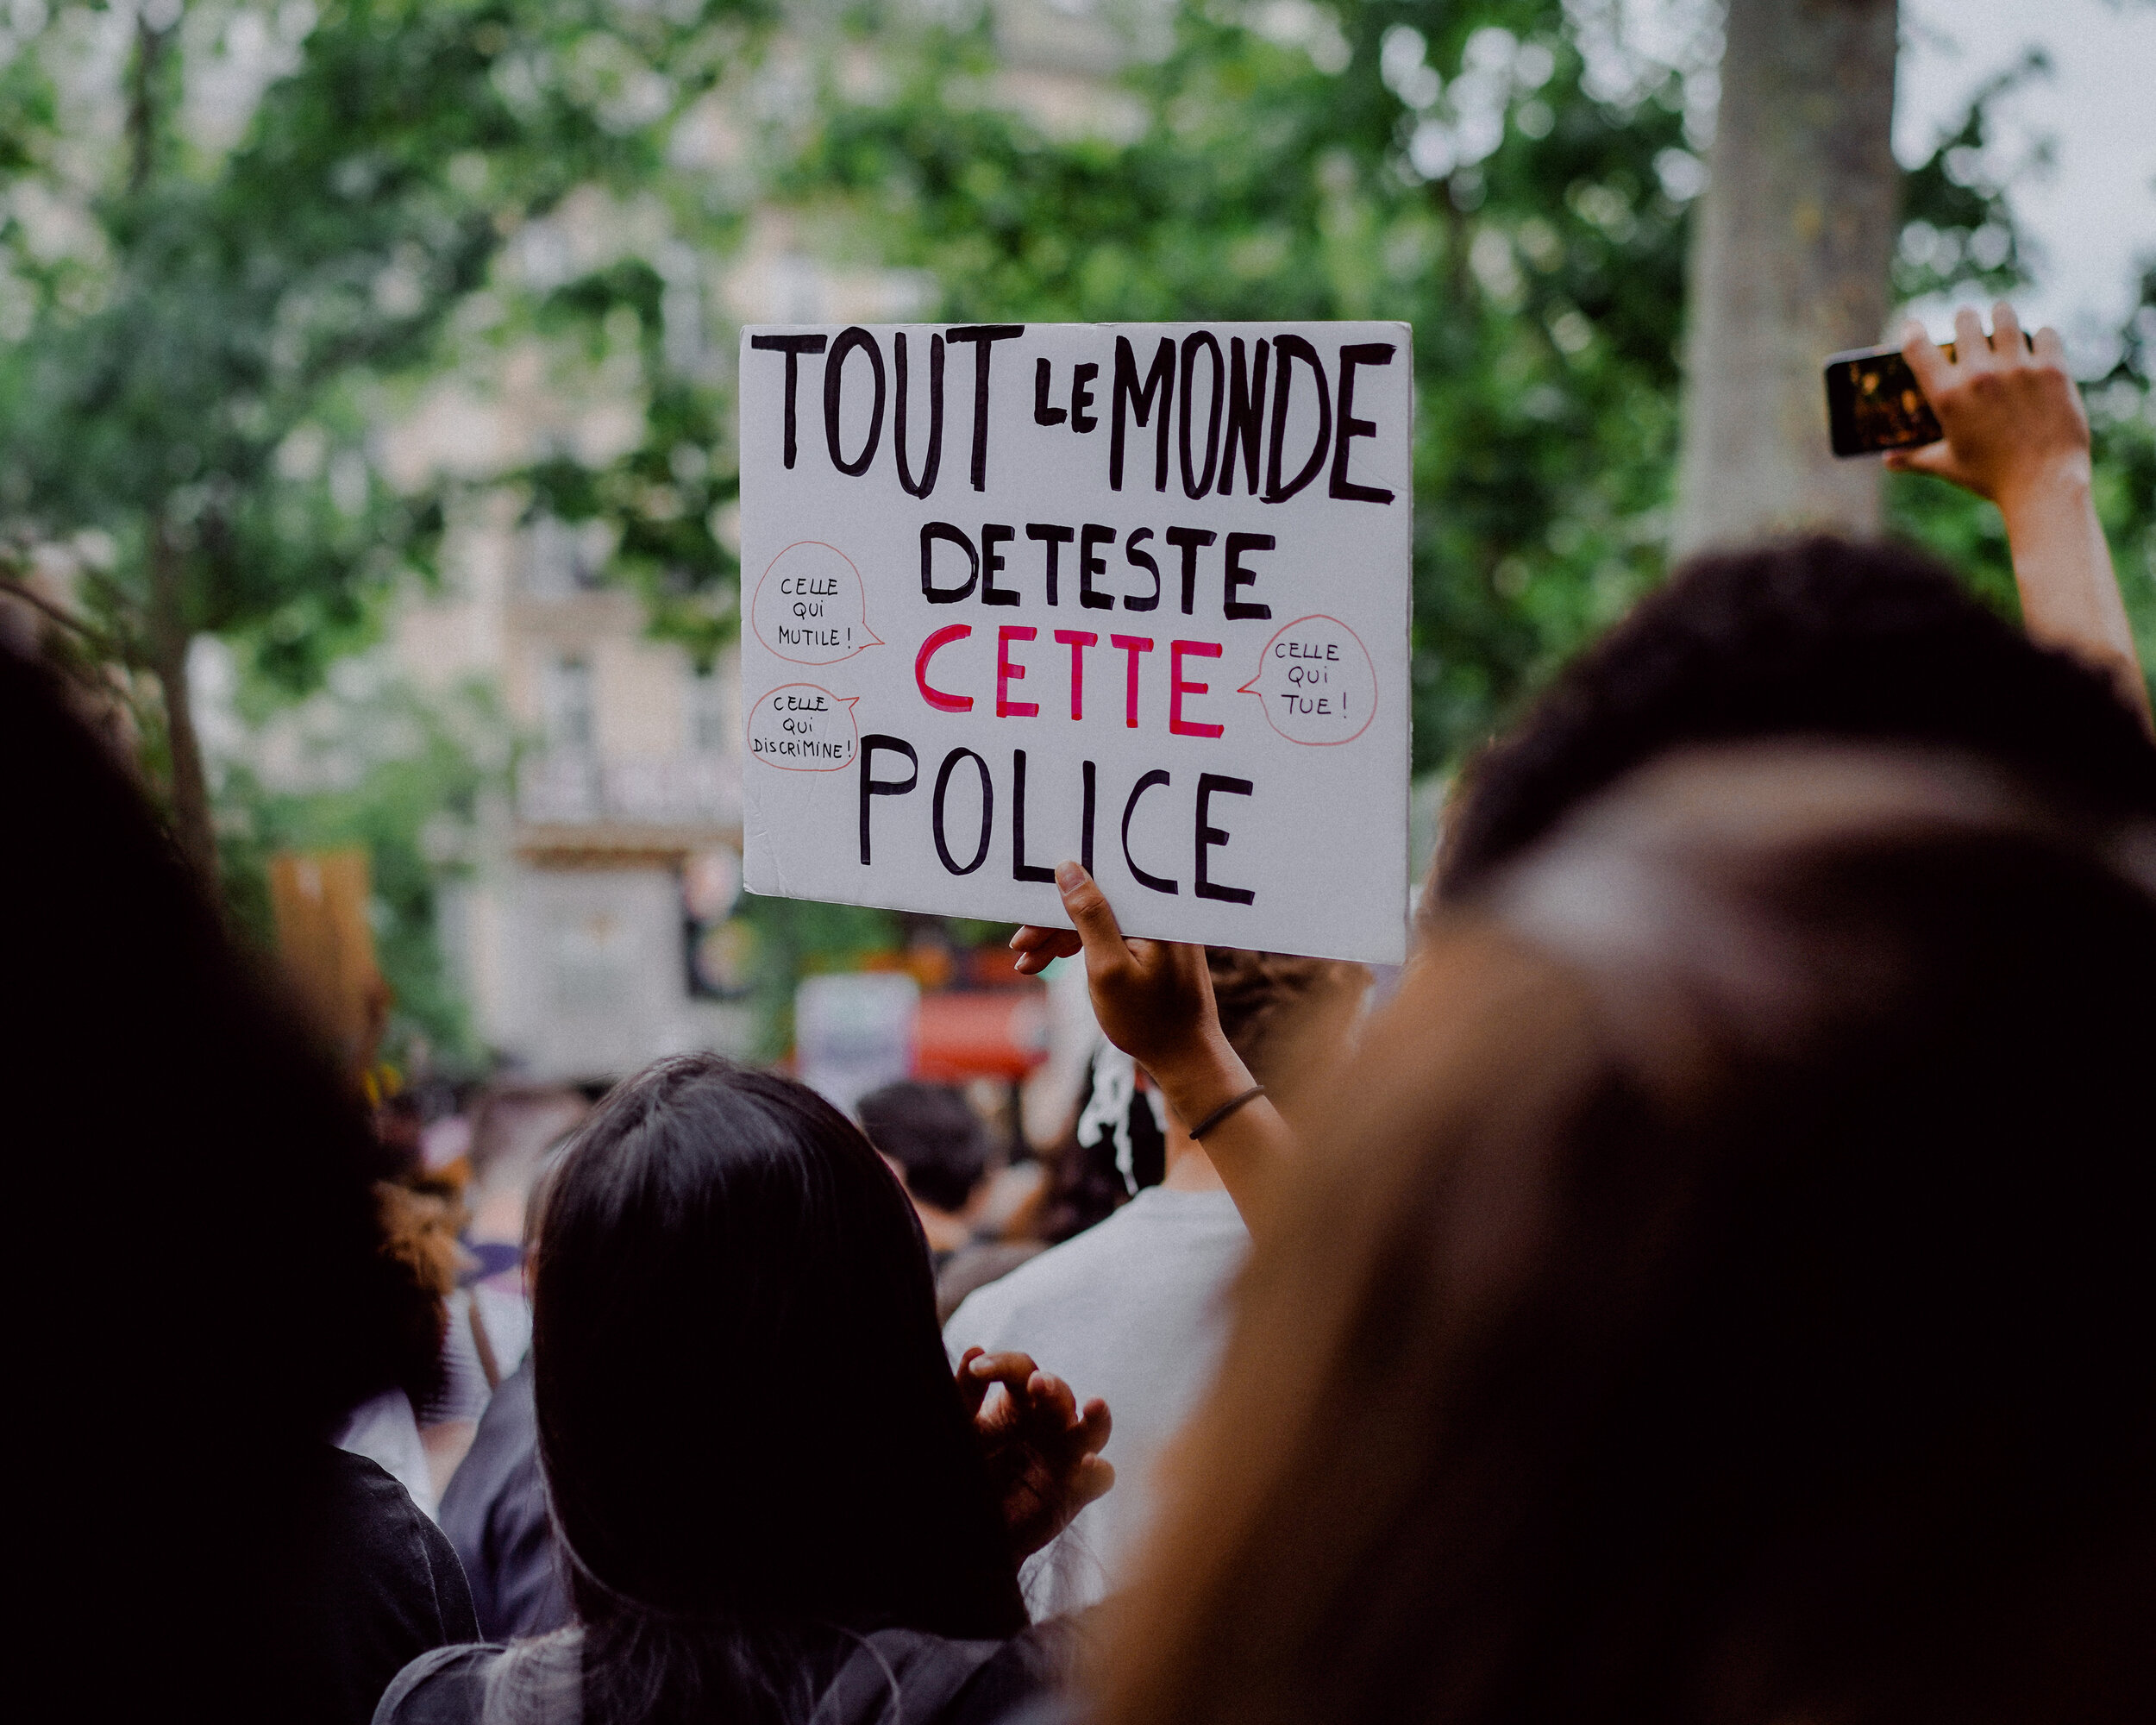  Rassemblement contre les violences policières - Paris, Place de la République, juin 2020 